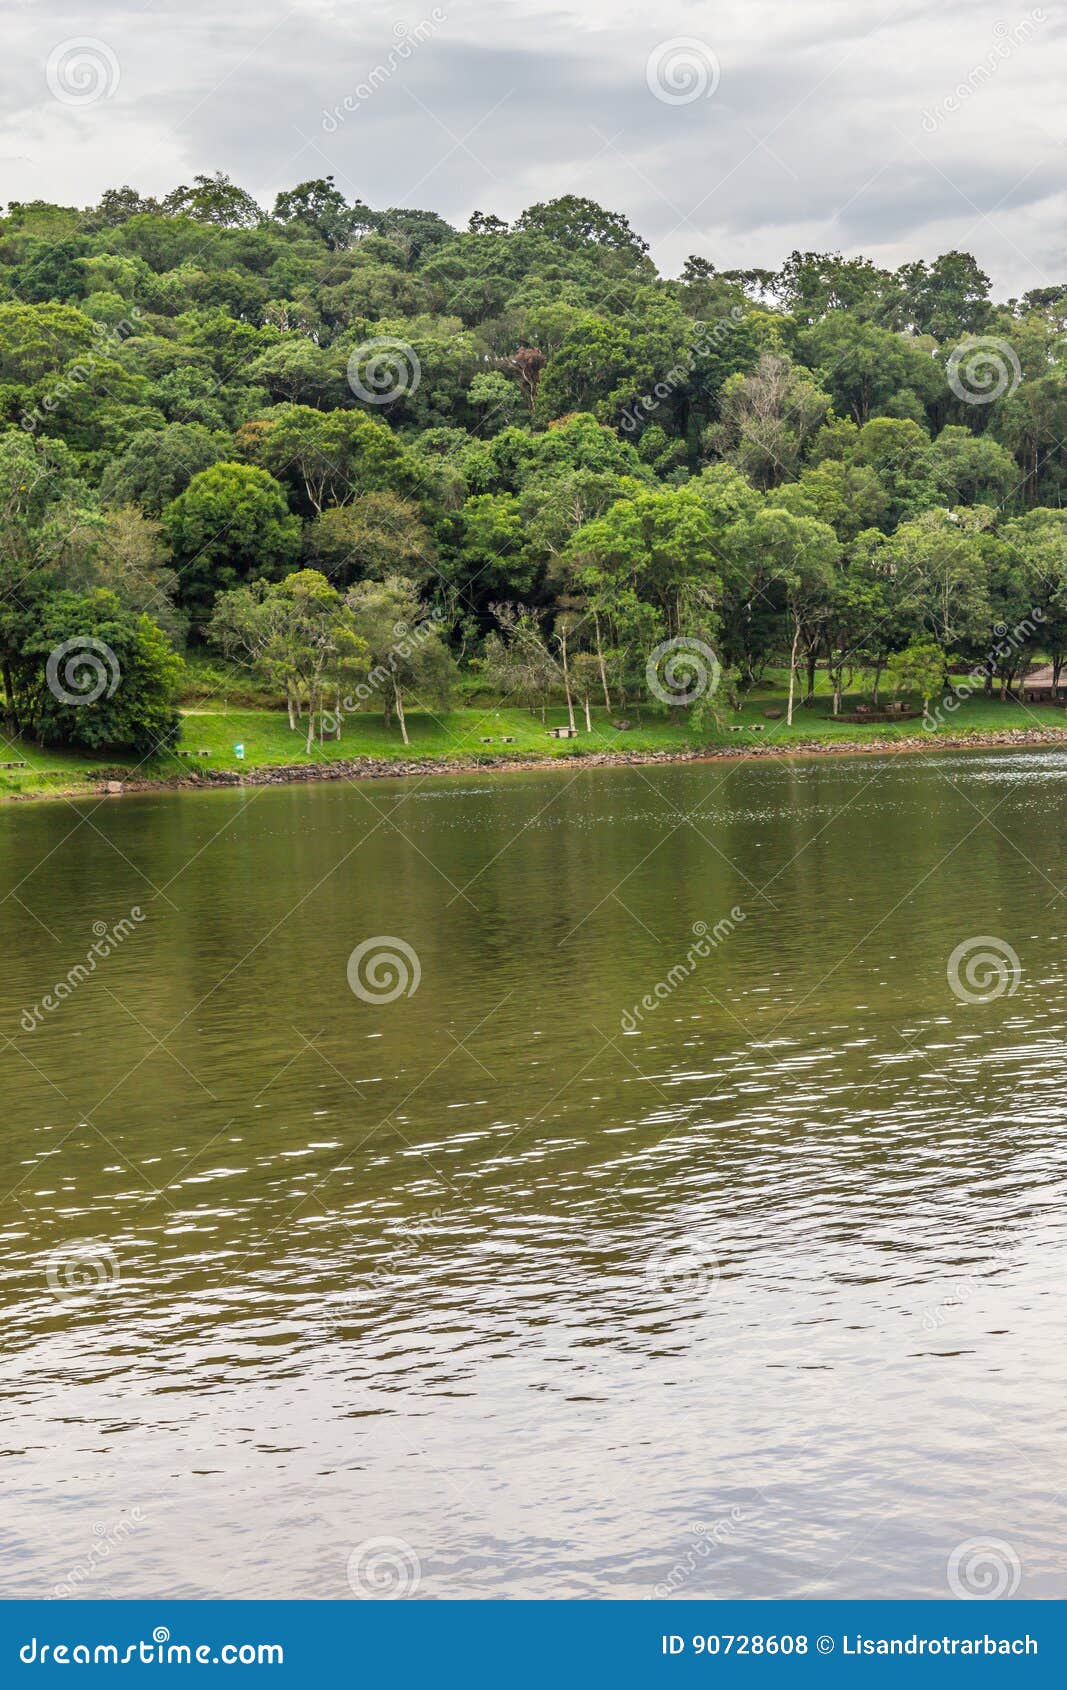 trees in garibaldi lake in encantado